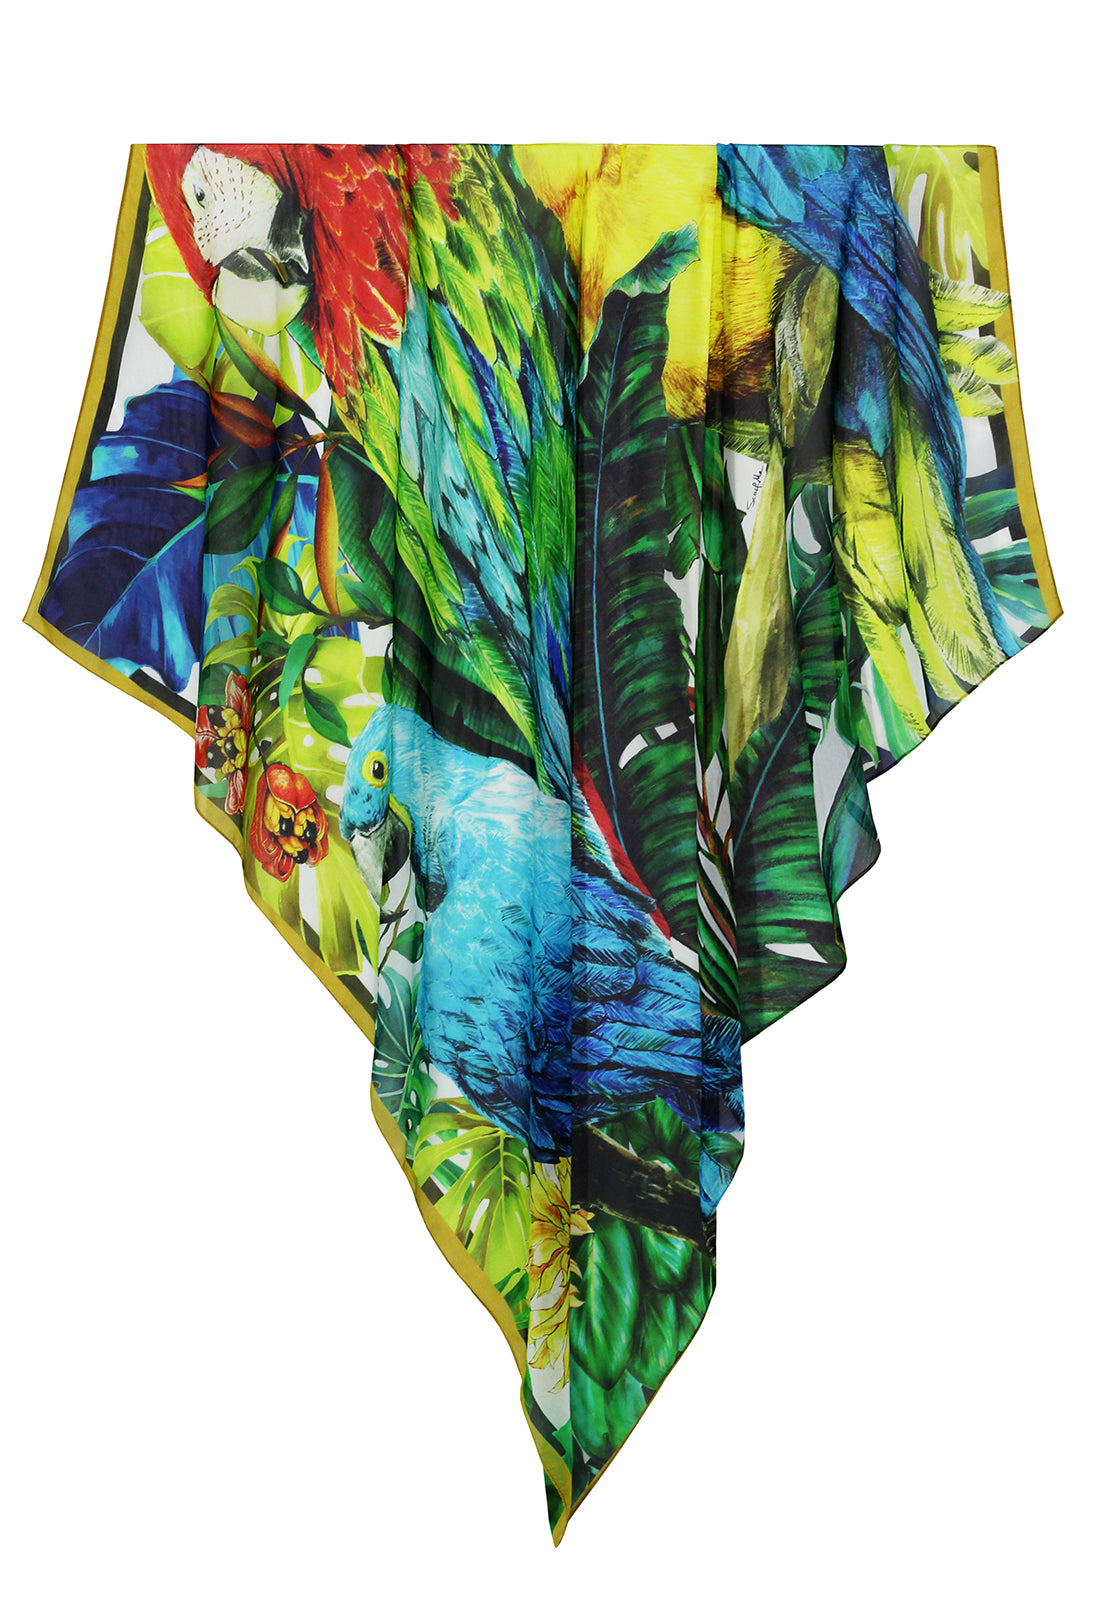 Max lenço Araras do Brasil em mousseline de seda | 130x130cm